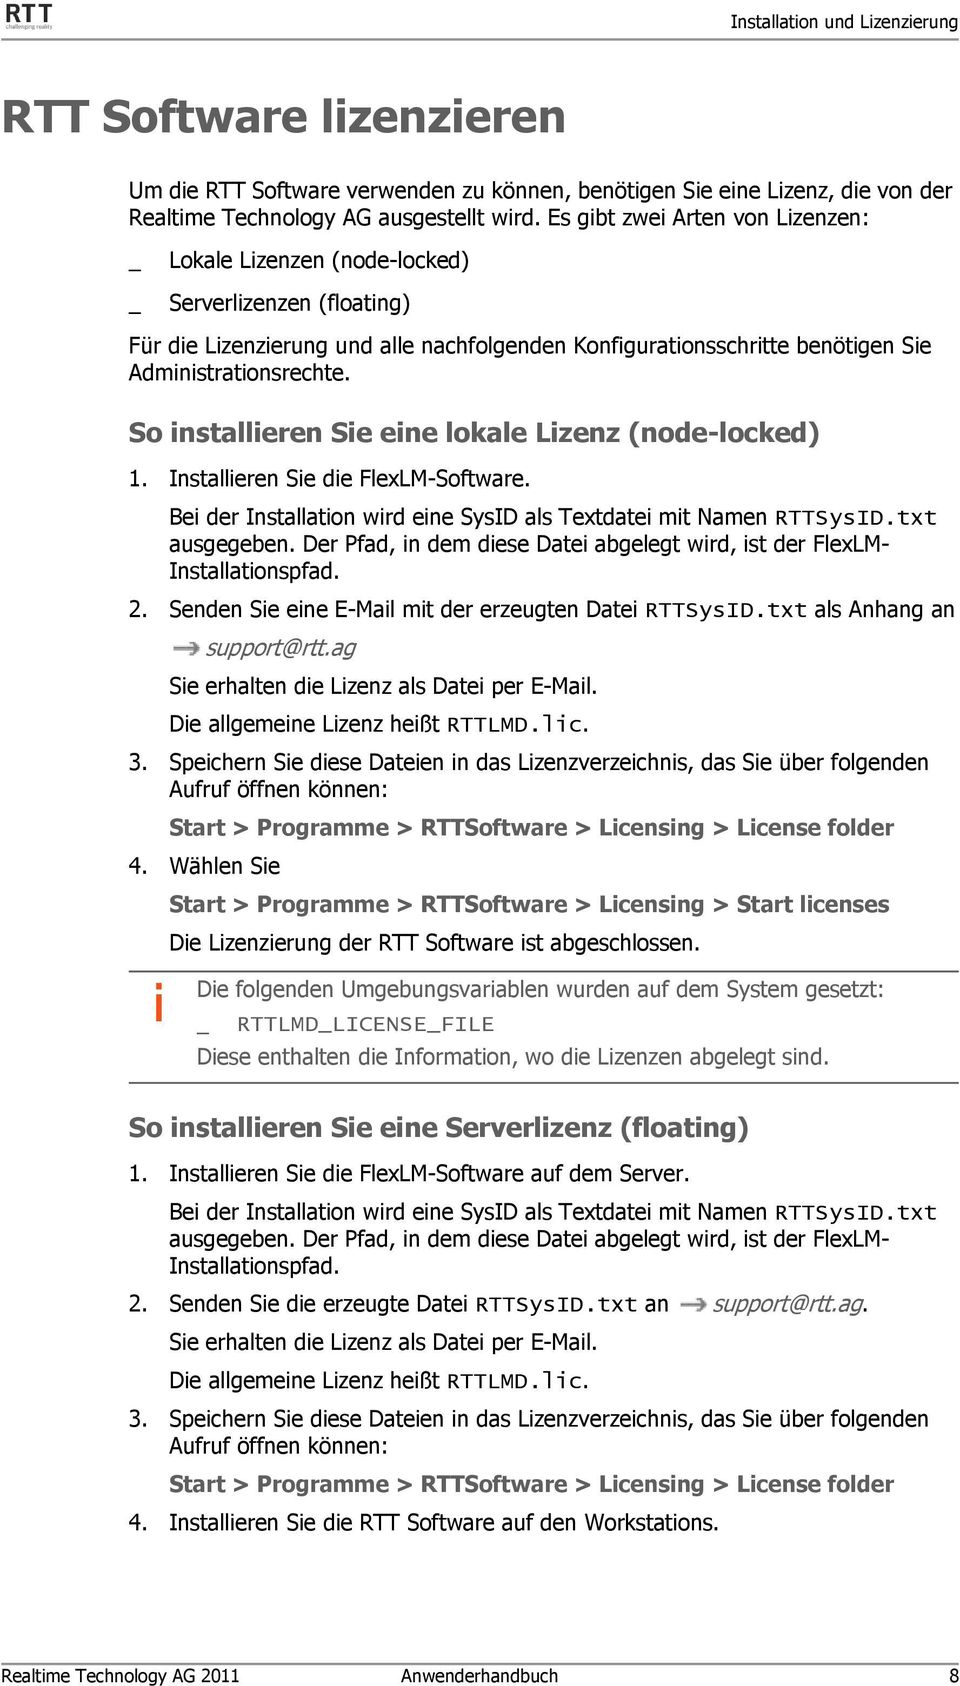 So installieren Sie eine lokale Lizenz (node-locked) 1. Installieren Sie die FlexLM-Software. Bei der Installation wird eine SysID als Textdatei mit Namen RTTSysID.txt ausgegeben.